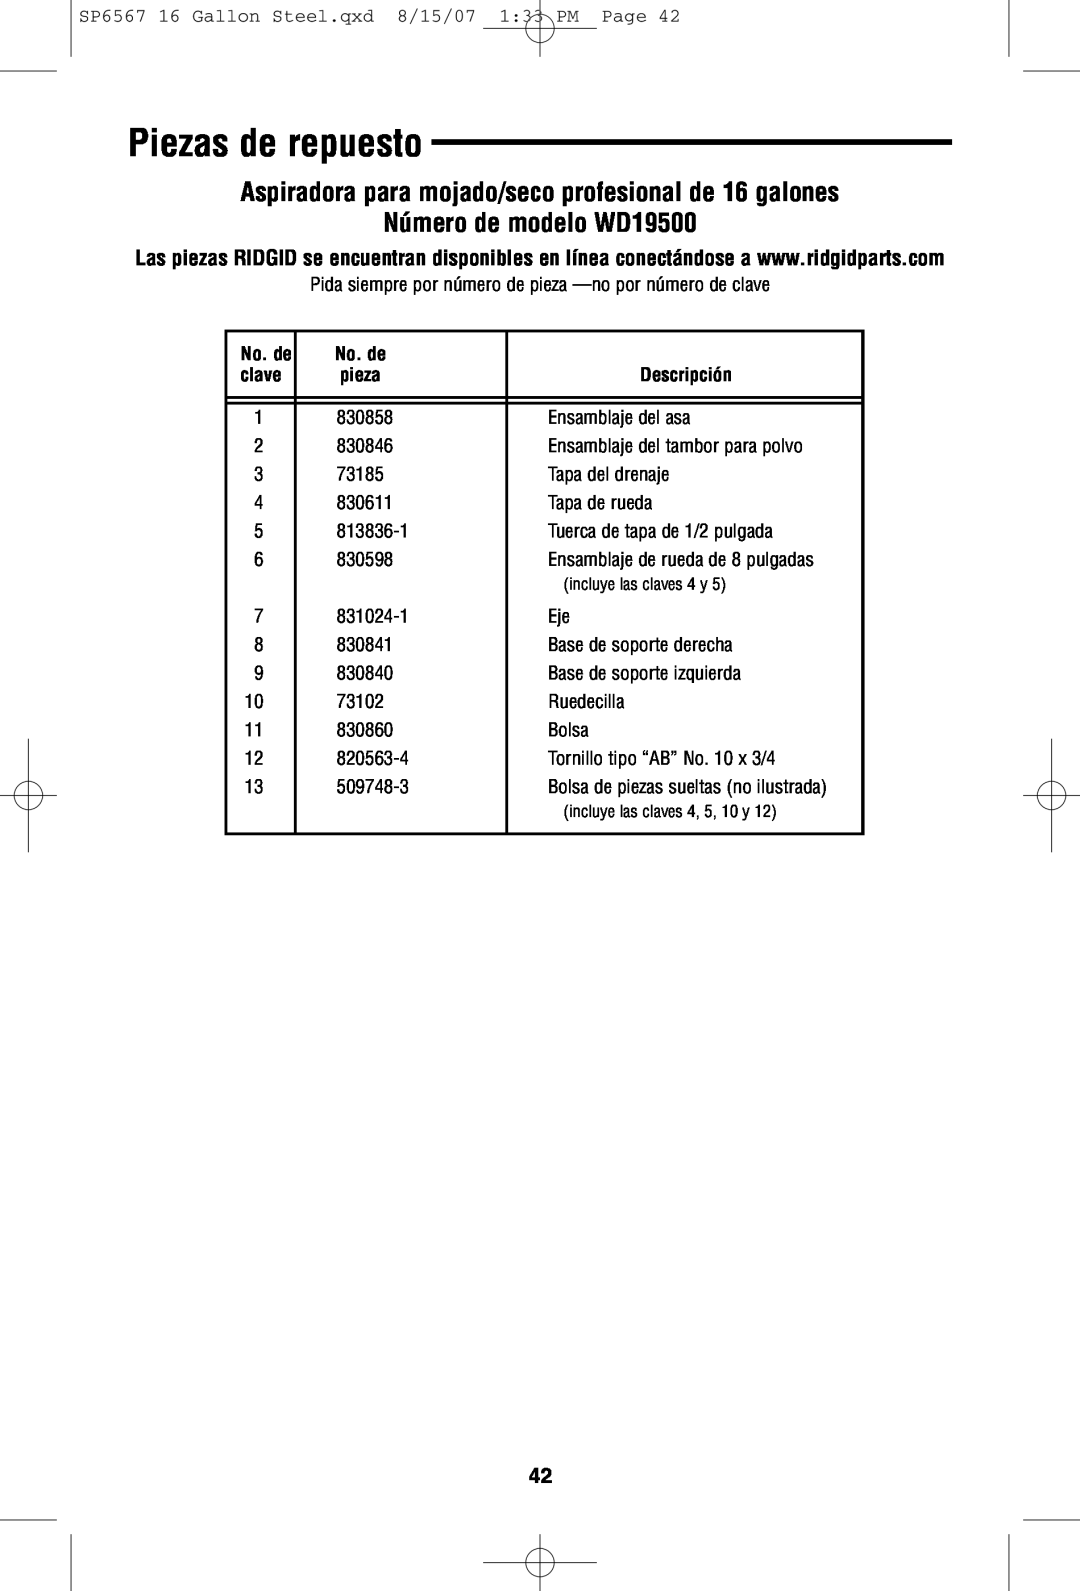 RIDGID manual Piezas de repuesto, Número de modelo WD19500, No. de, clave, pieza, Descripción 